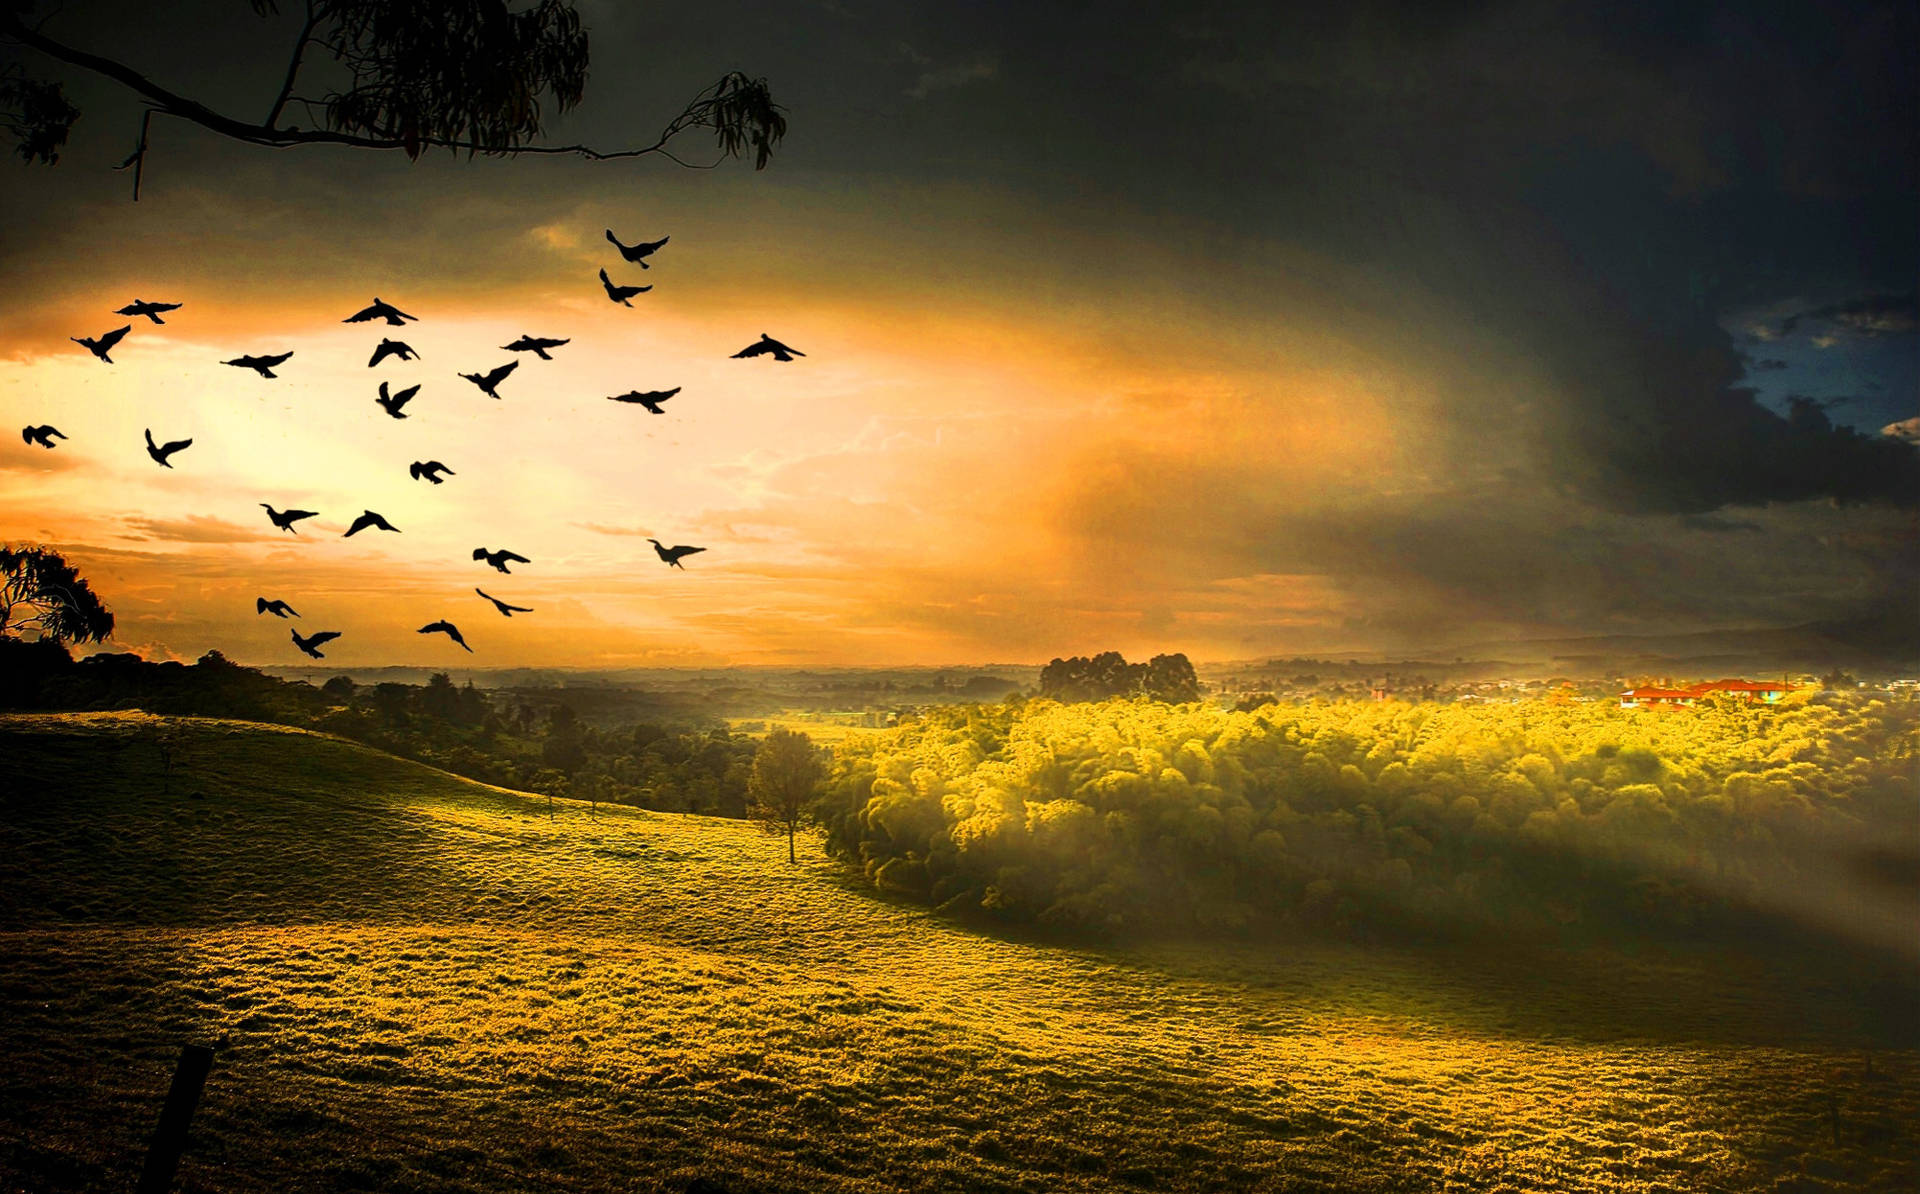 Hd Landscape Flying Birds Over Green Field